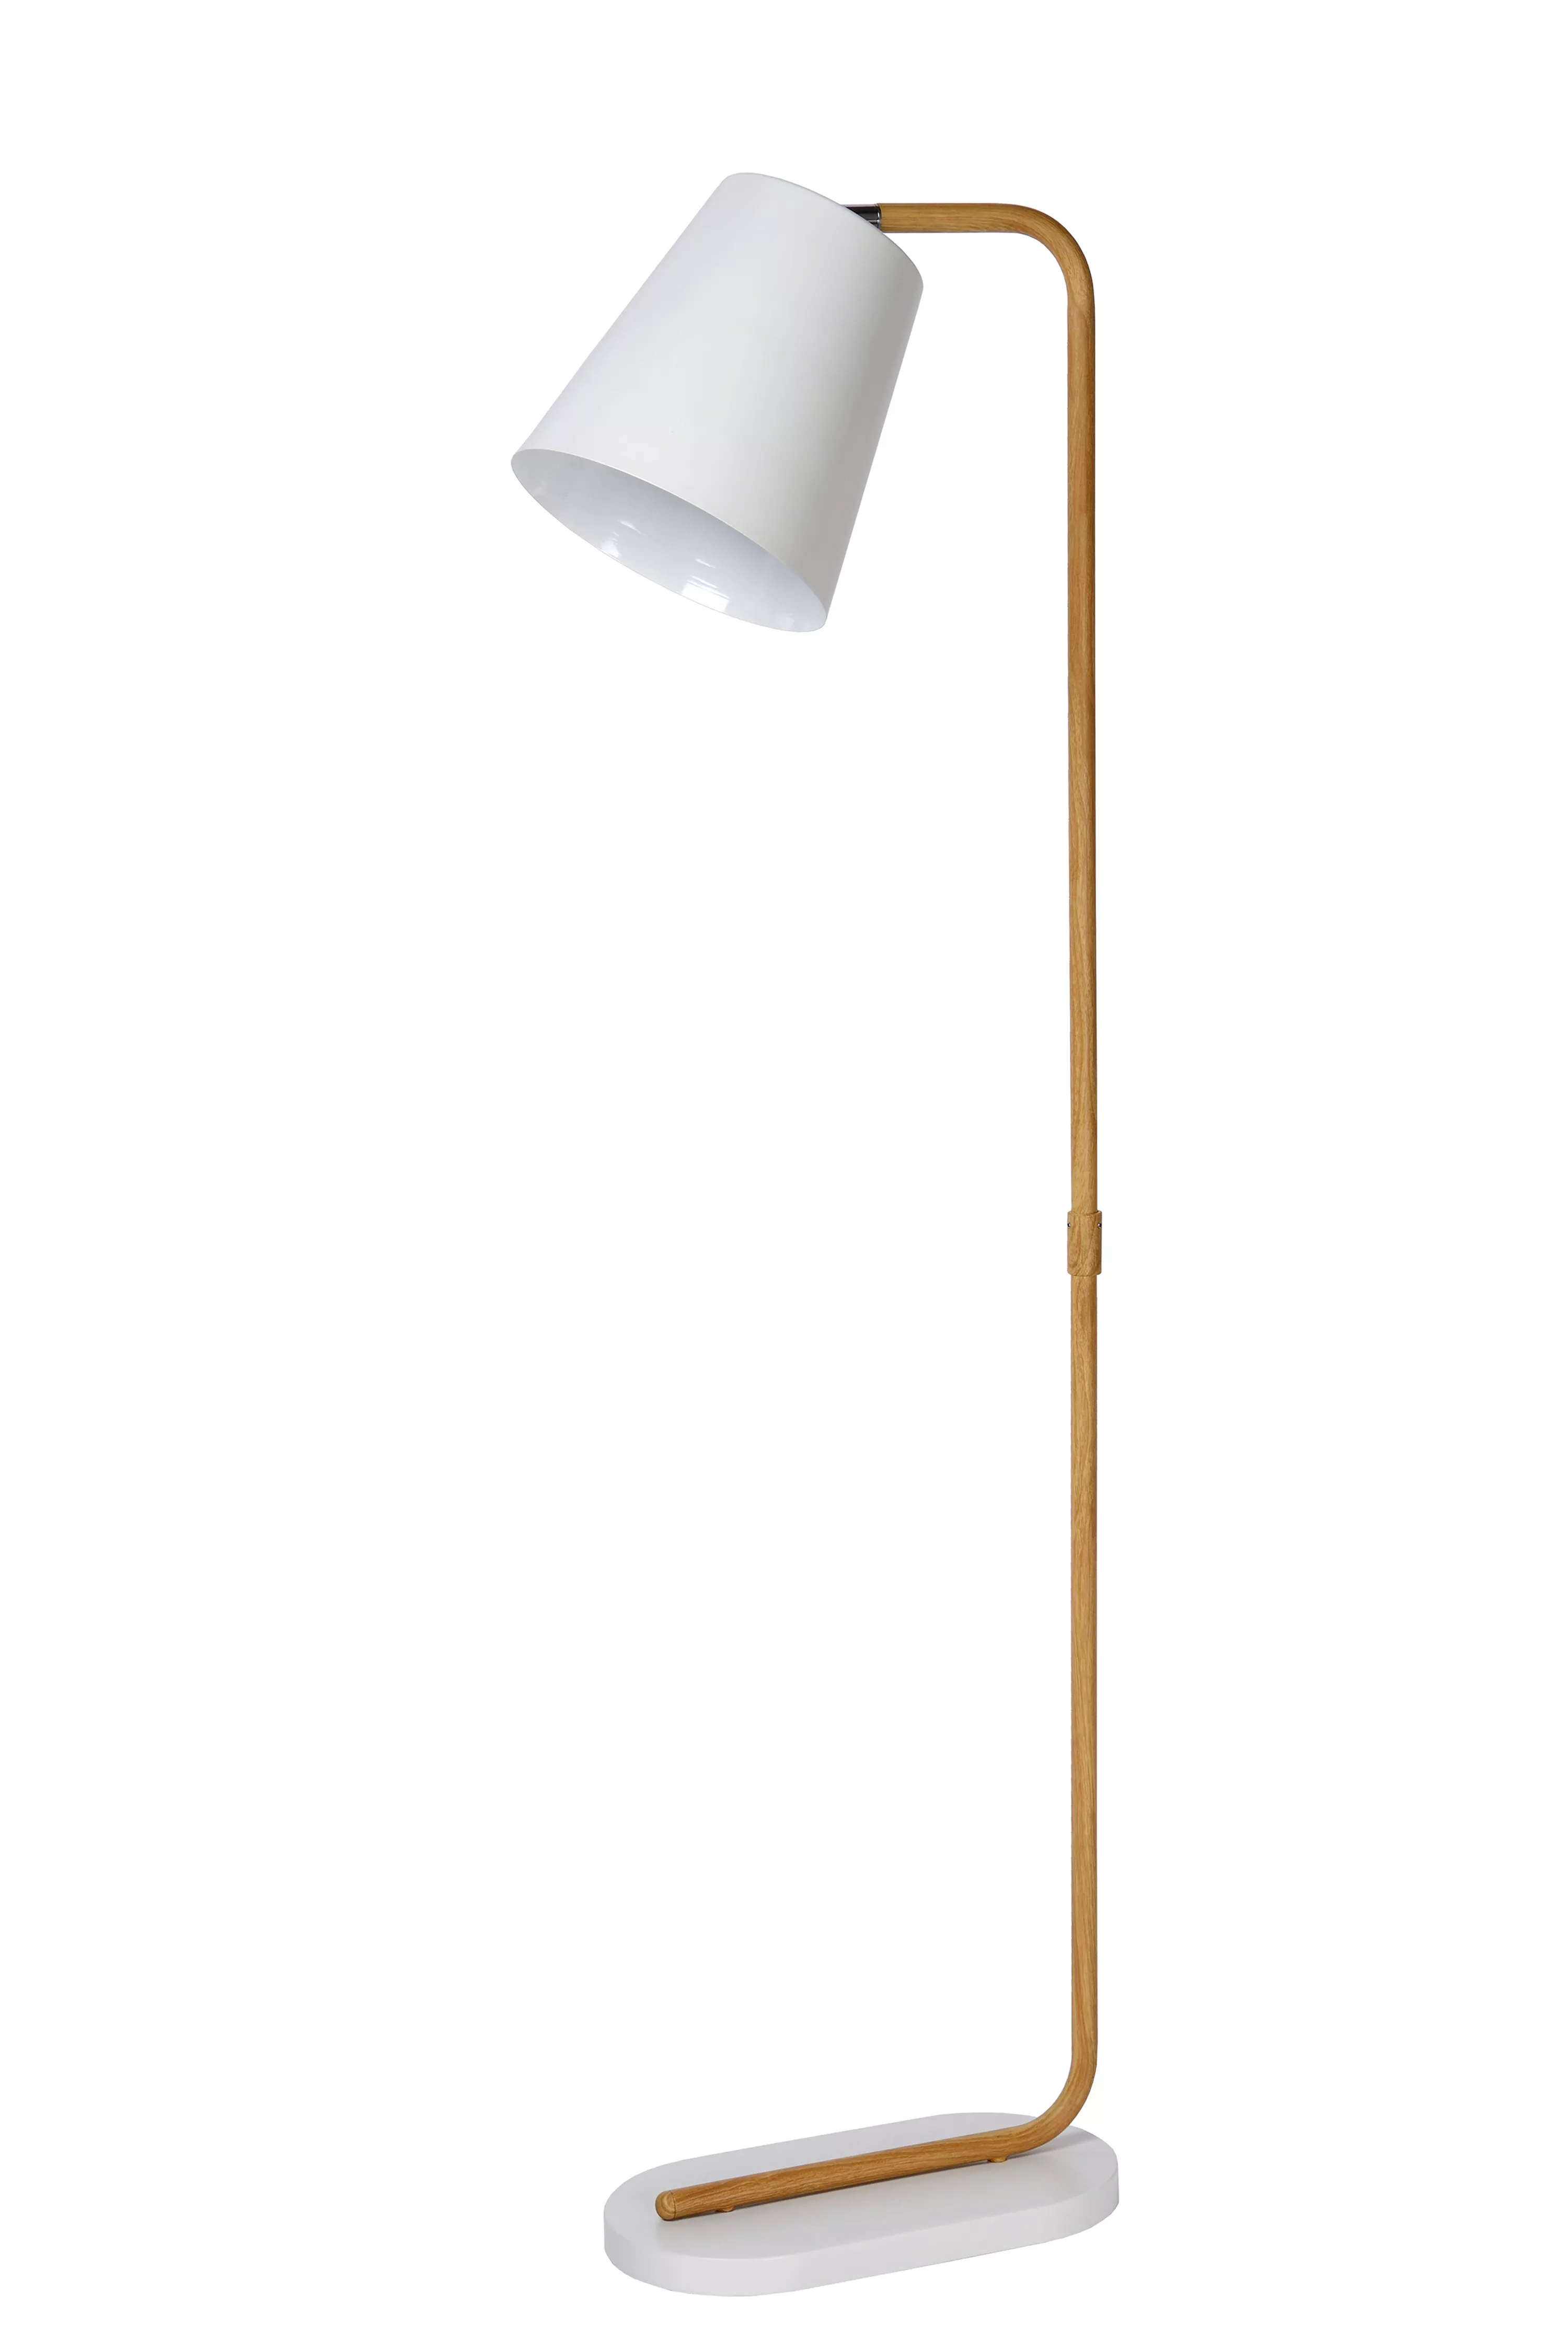 Stojací lampa Cona v bílém provedení s kovovou tyčí v motivu dřeva a s otočným kloubem pro snadné směrování stínítka.